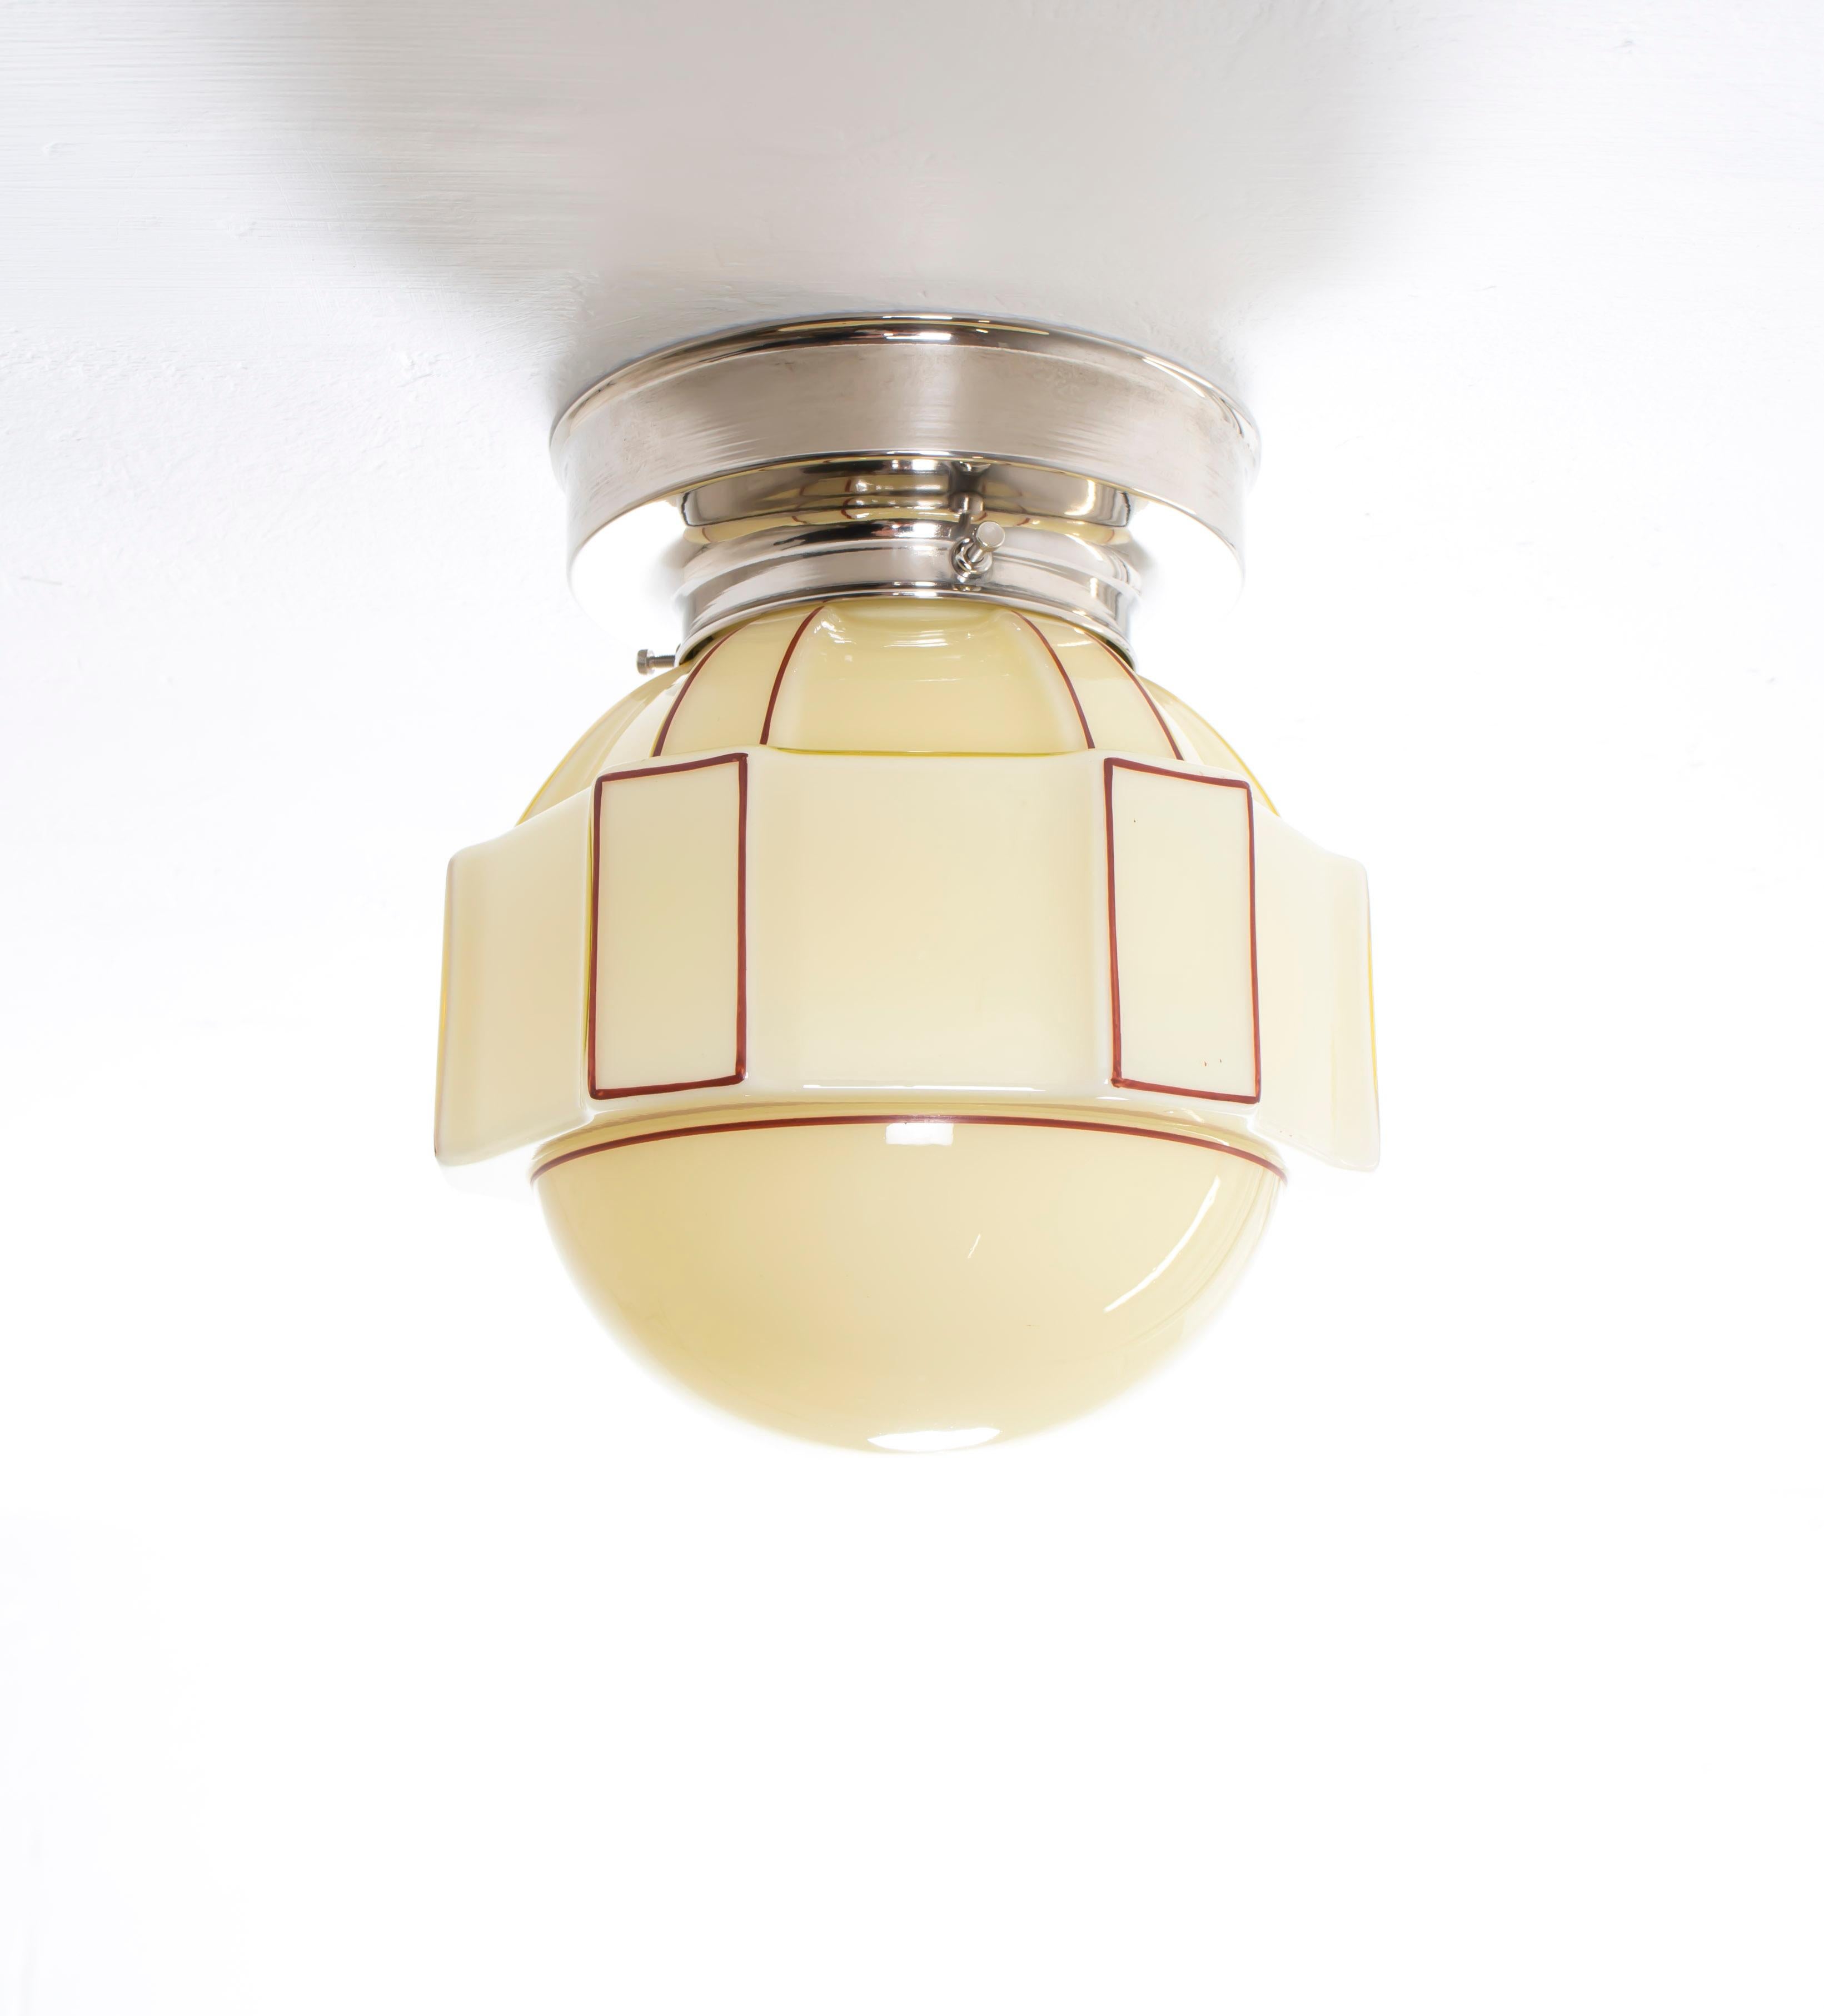 1950s ceiling light fixtures